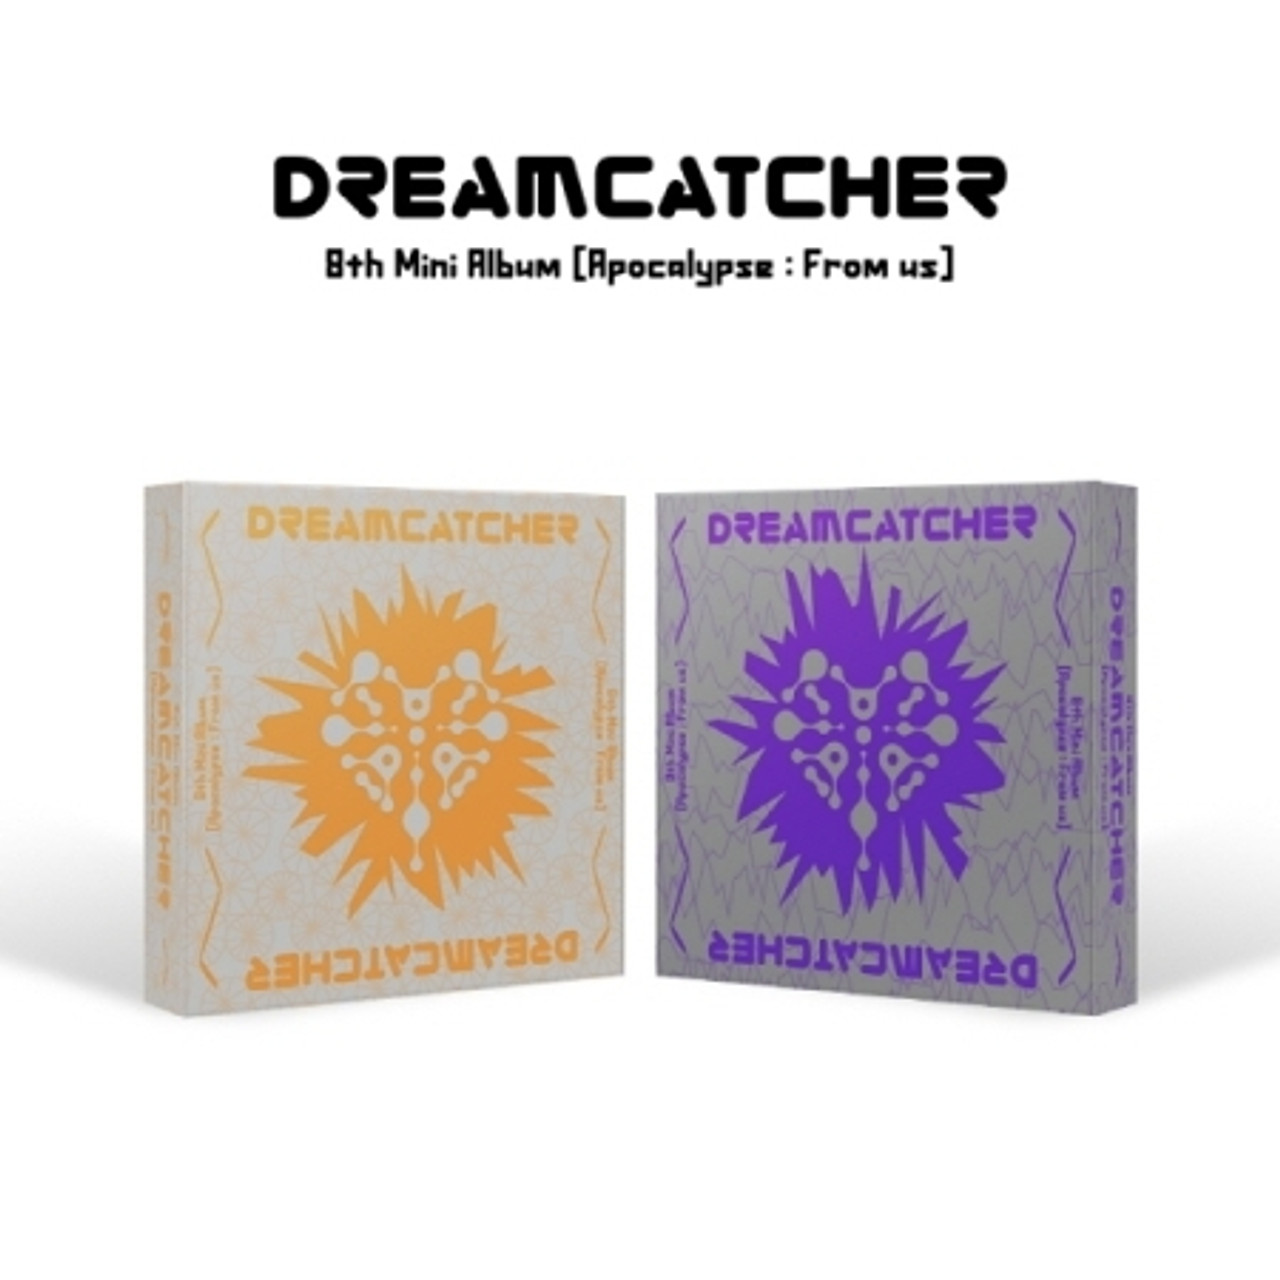 Dreamcatcher  8th Mini Album  Apocalypse  From us Y ver